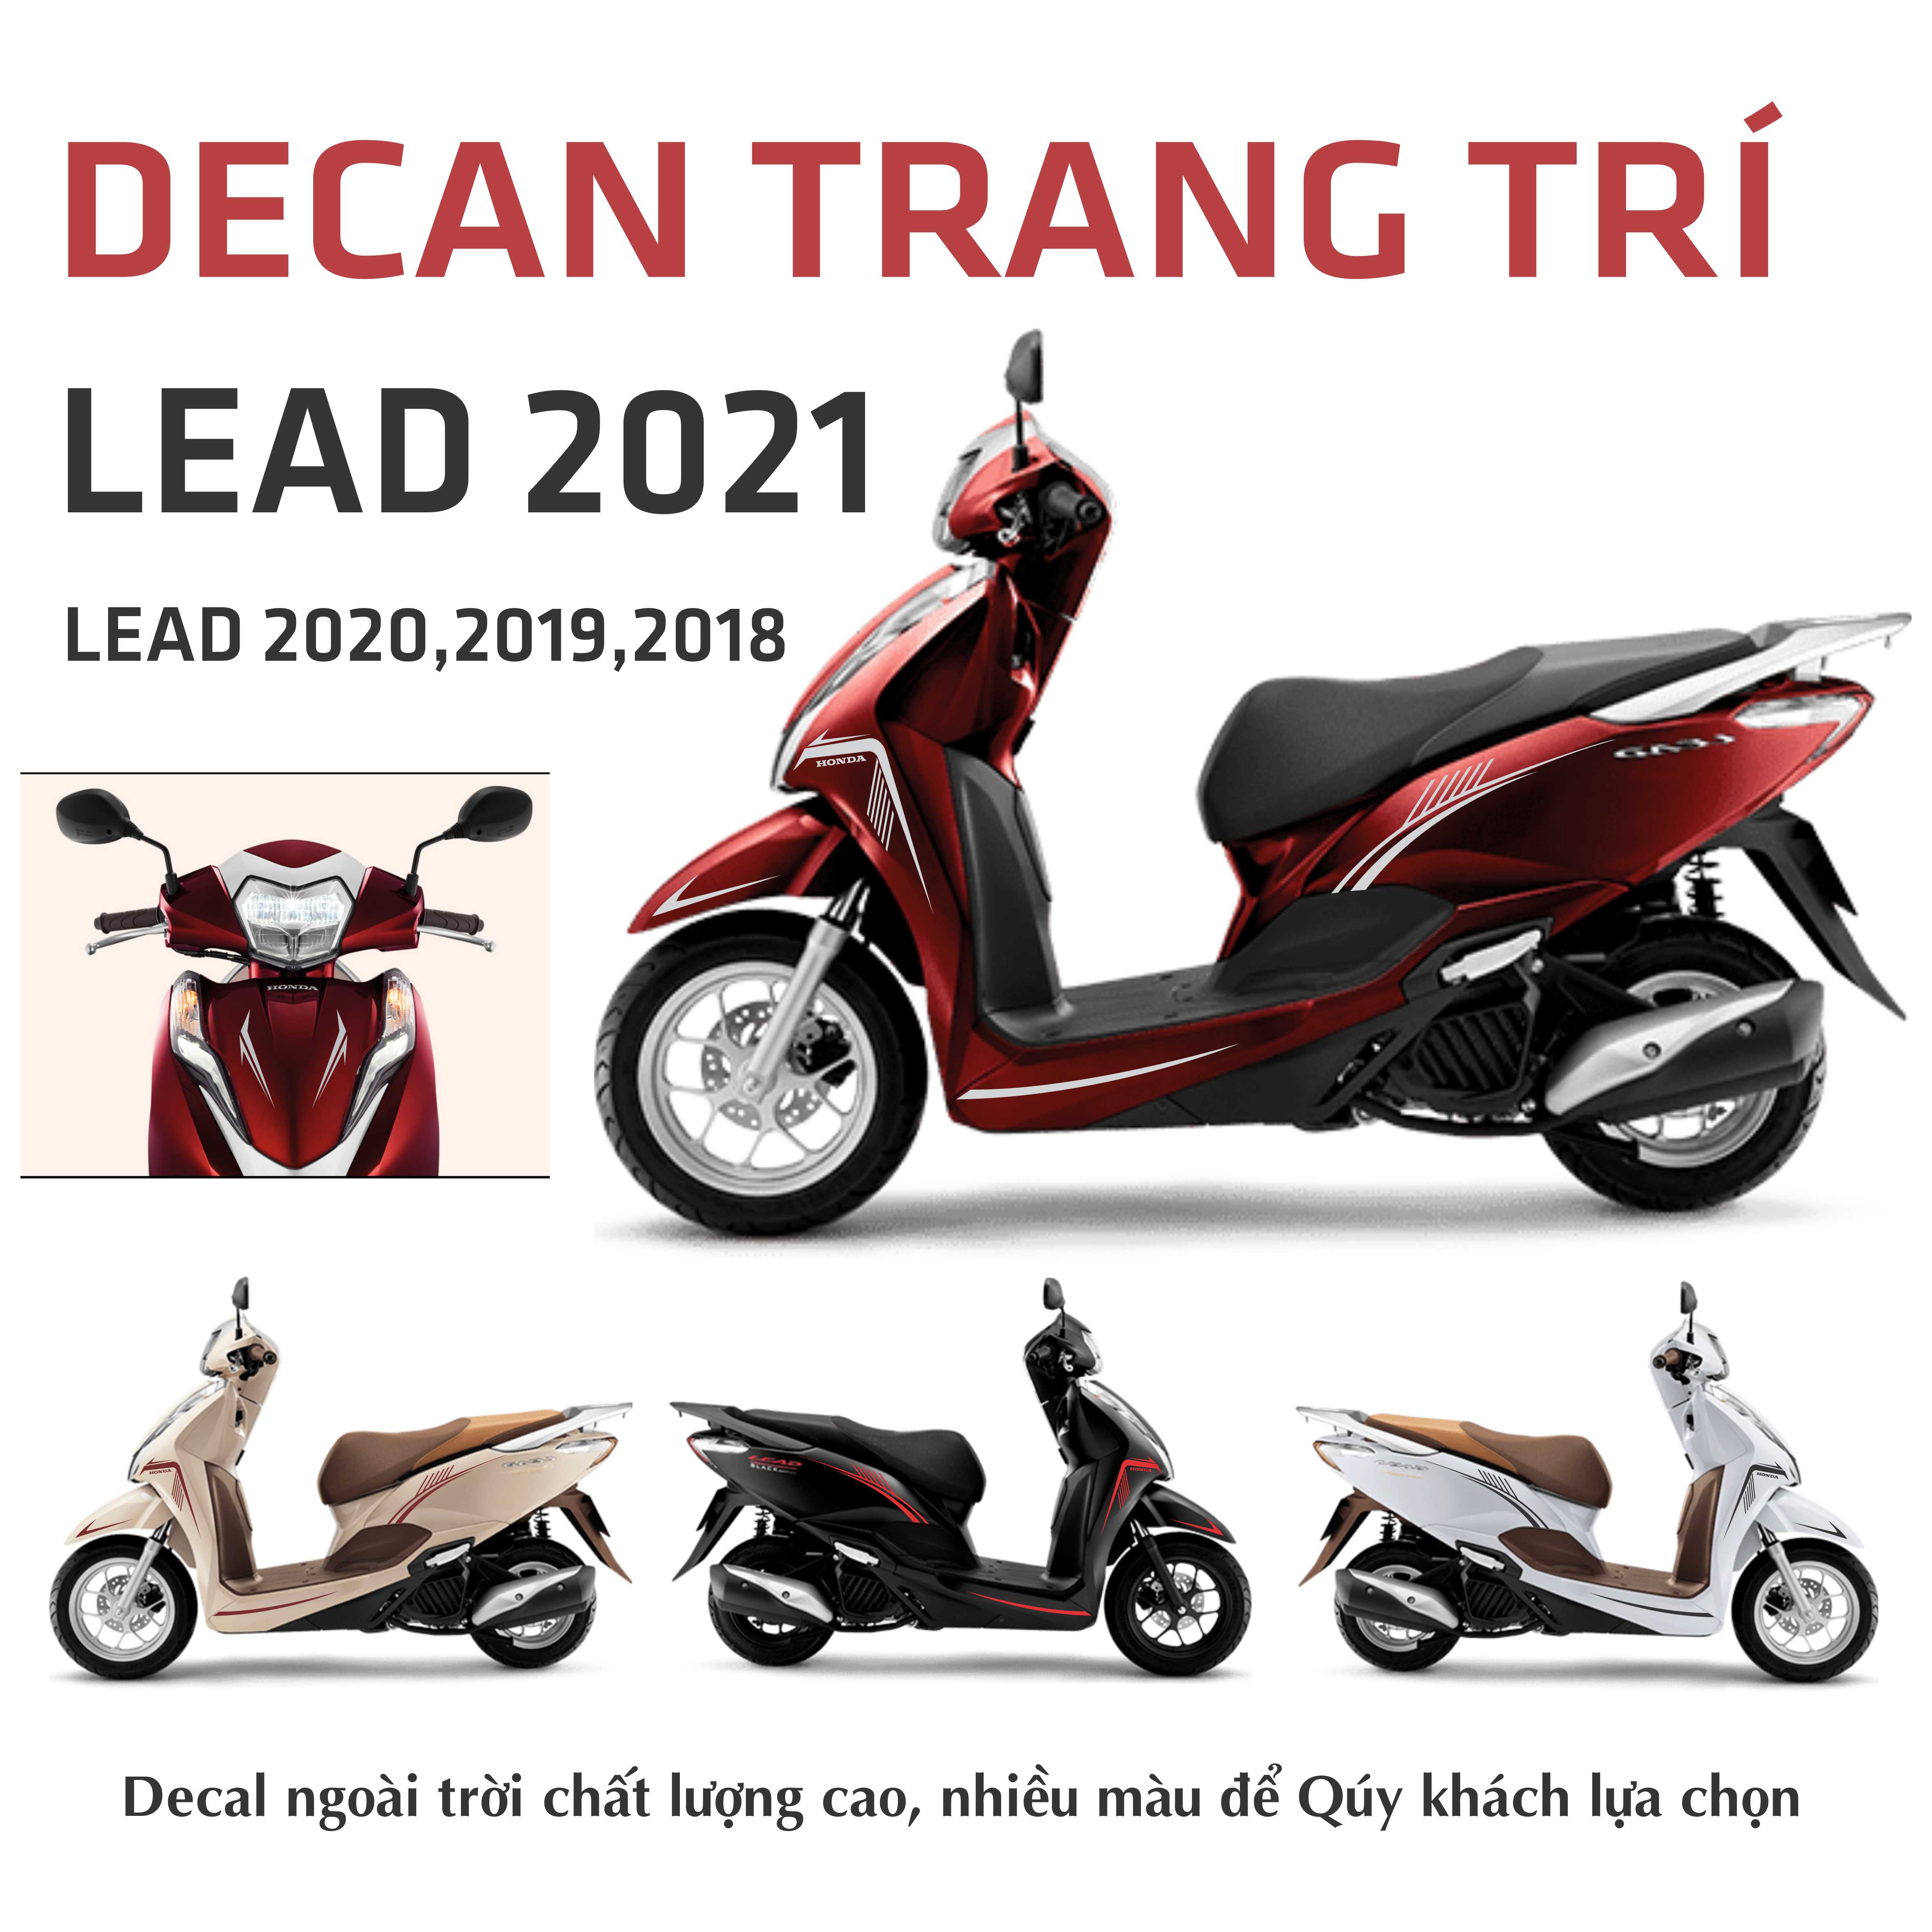 Honda Lead 2018 đội giá gần 3 triệu đồng tại Hà Nội